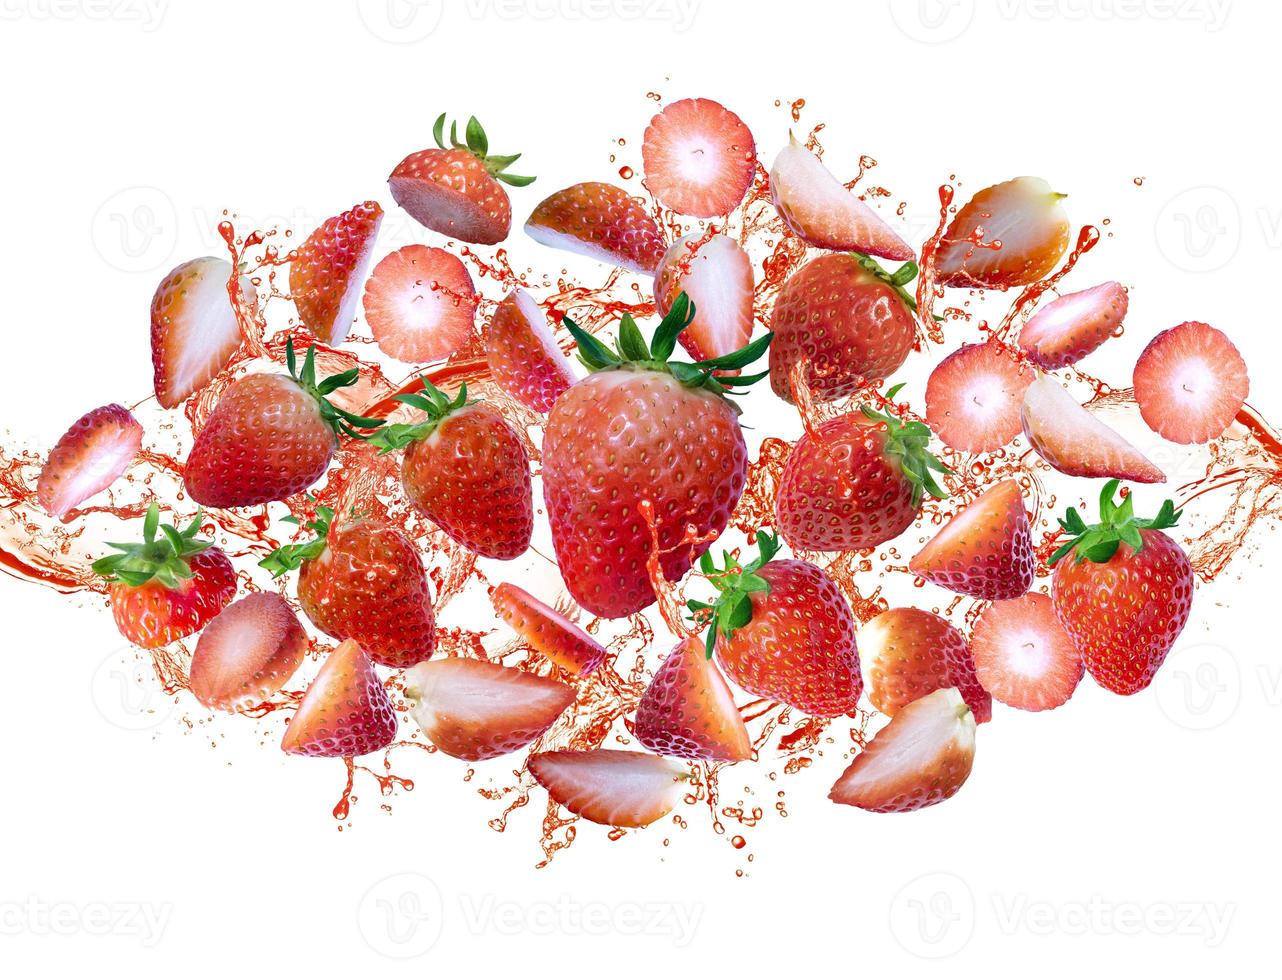 explosion of strawberry slice, strawberry splash photo